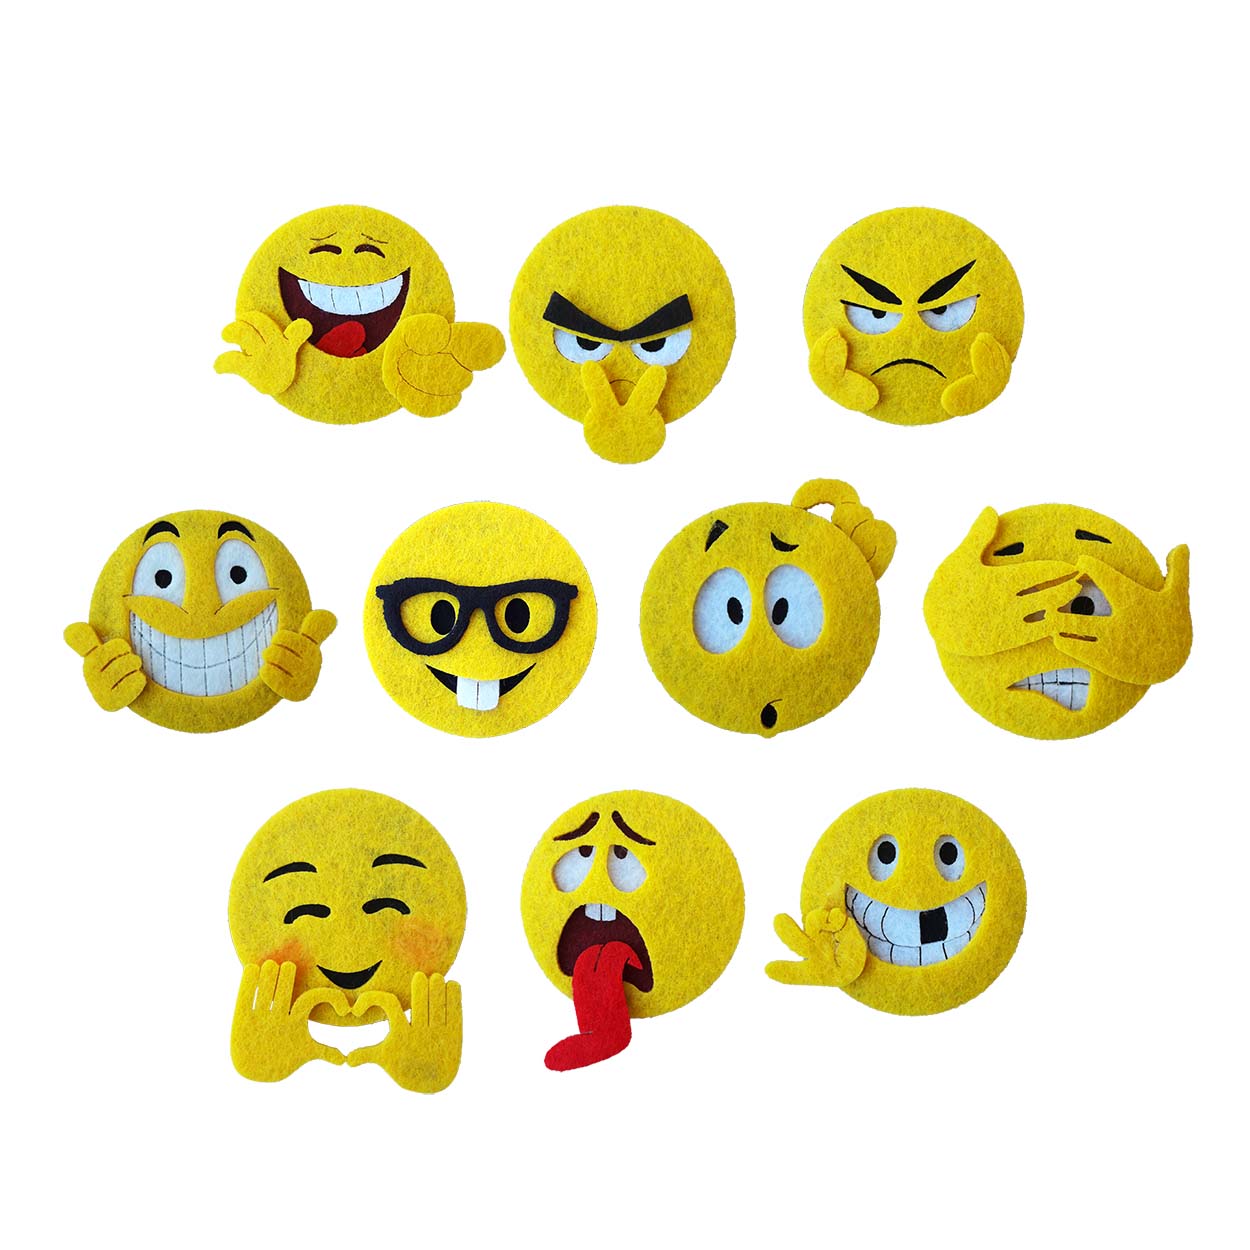 Felt Emoji Ornaments 10 Pieces, Felt Emoji Figures